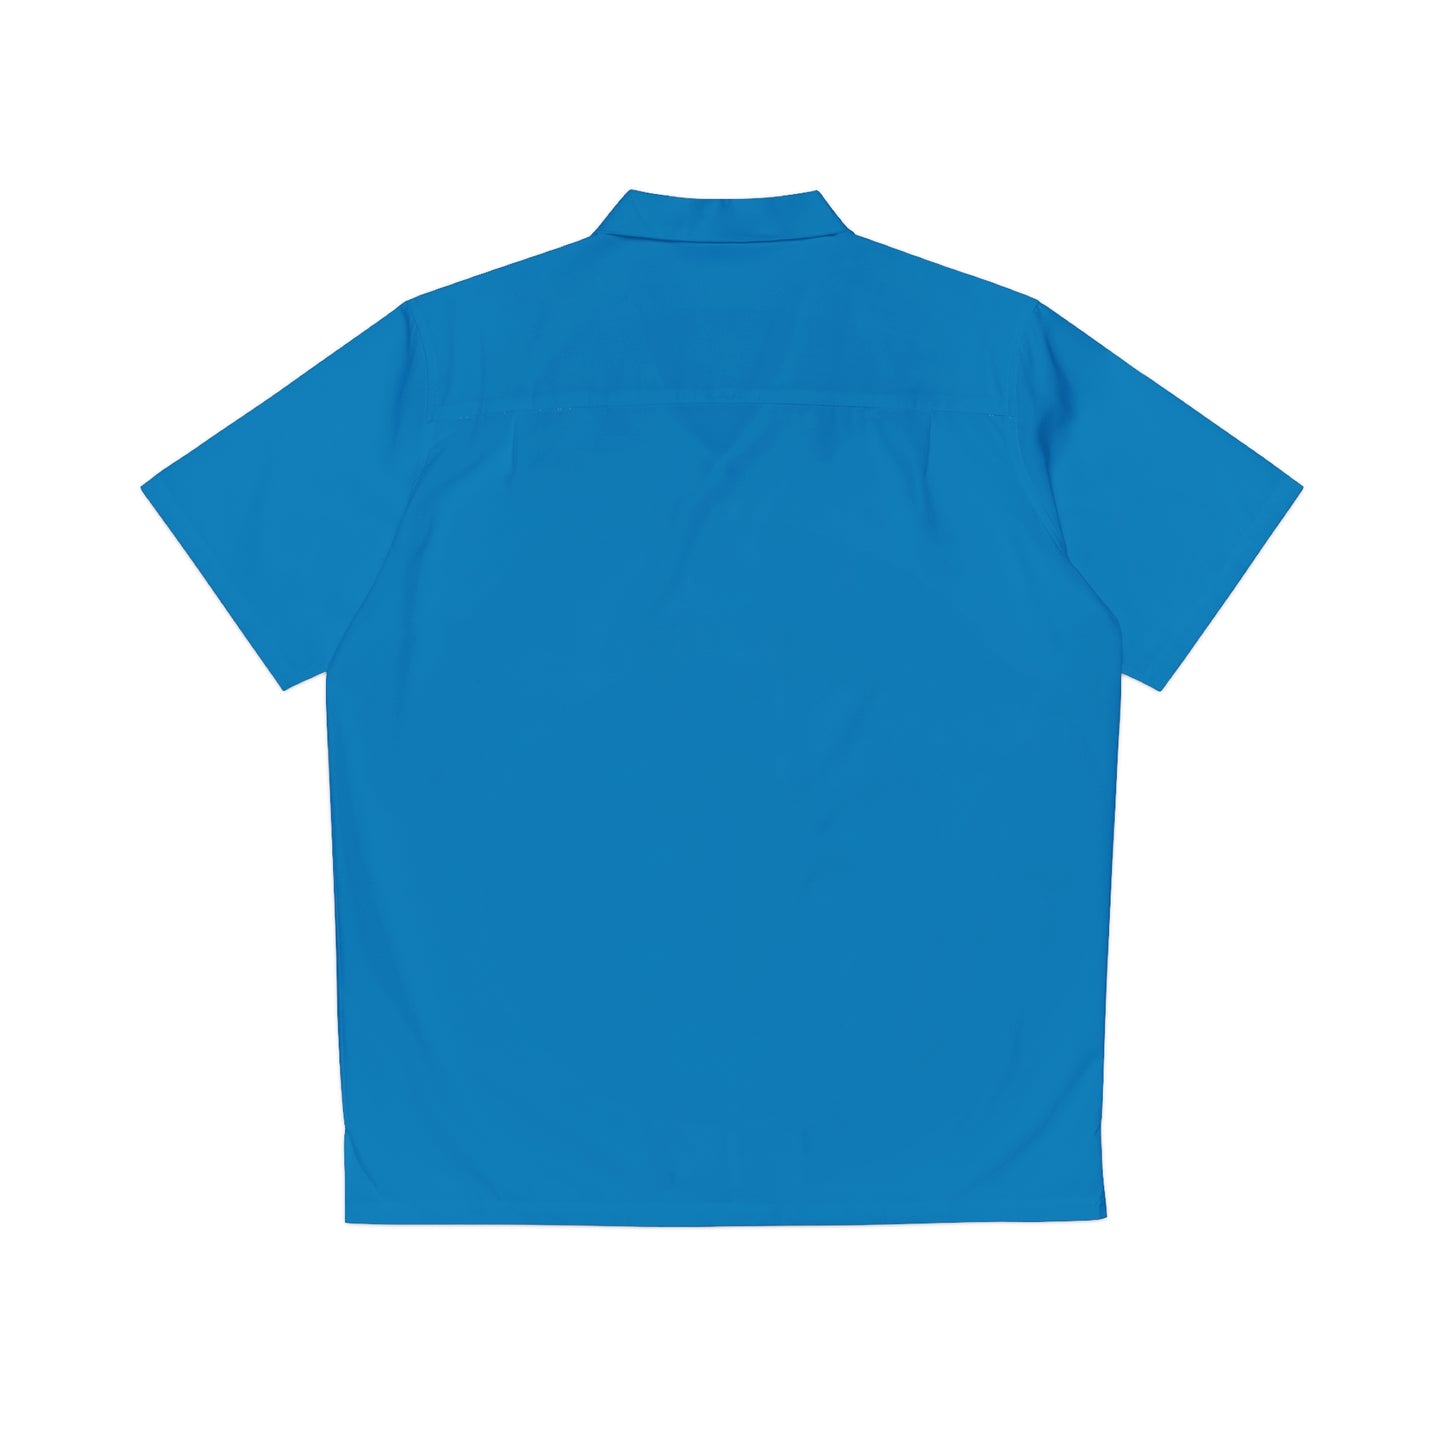 Peacock Blue Button Up Shirt